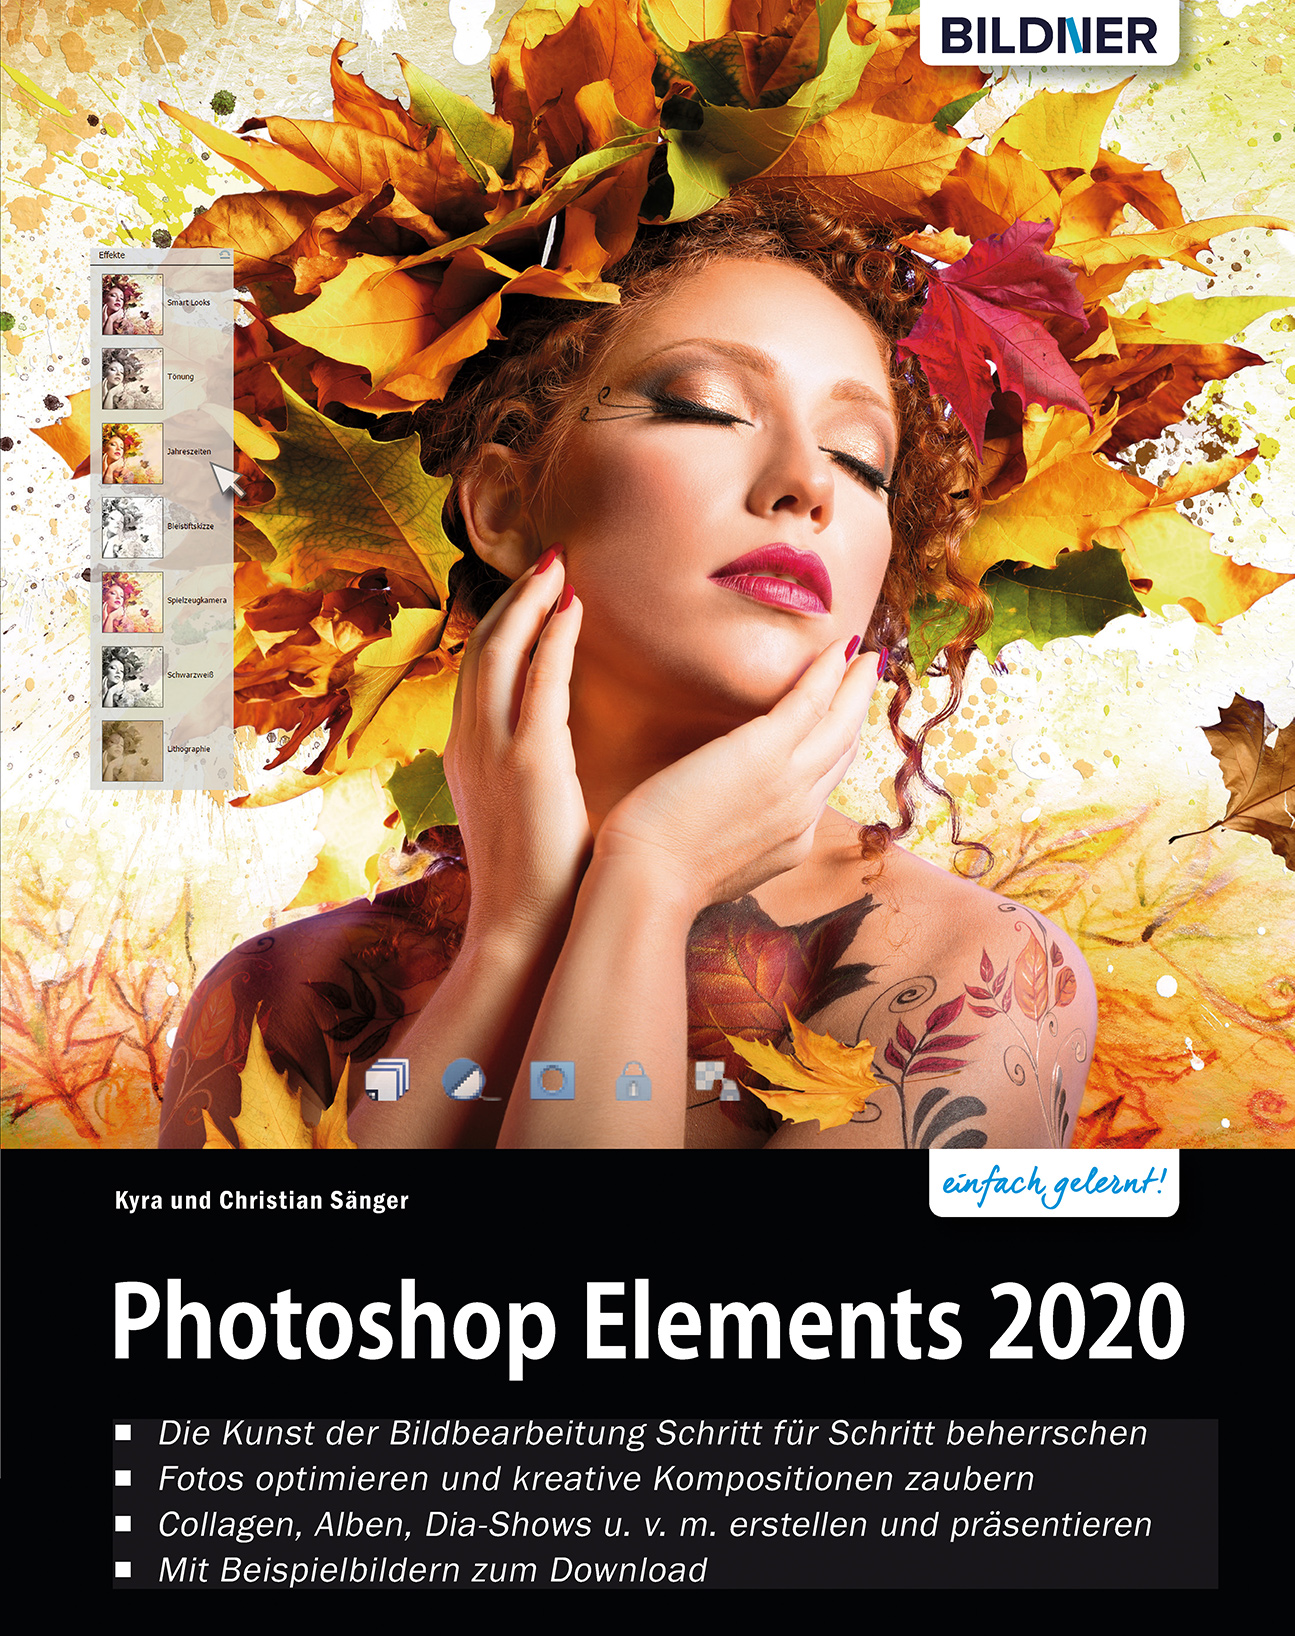 Photoshop Elements Saenger Photography